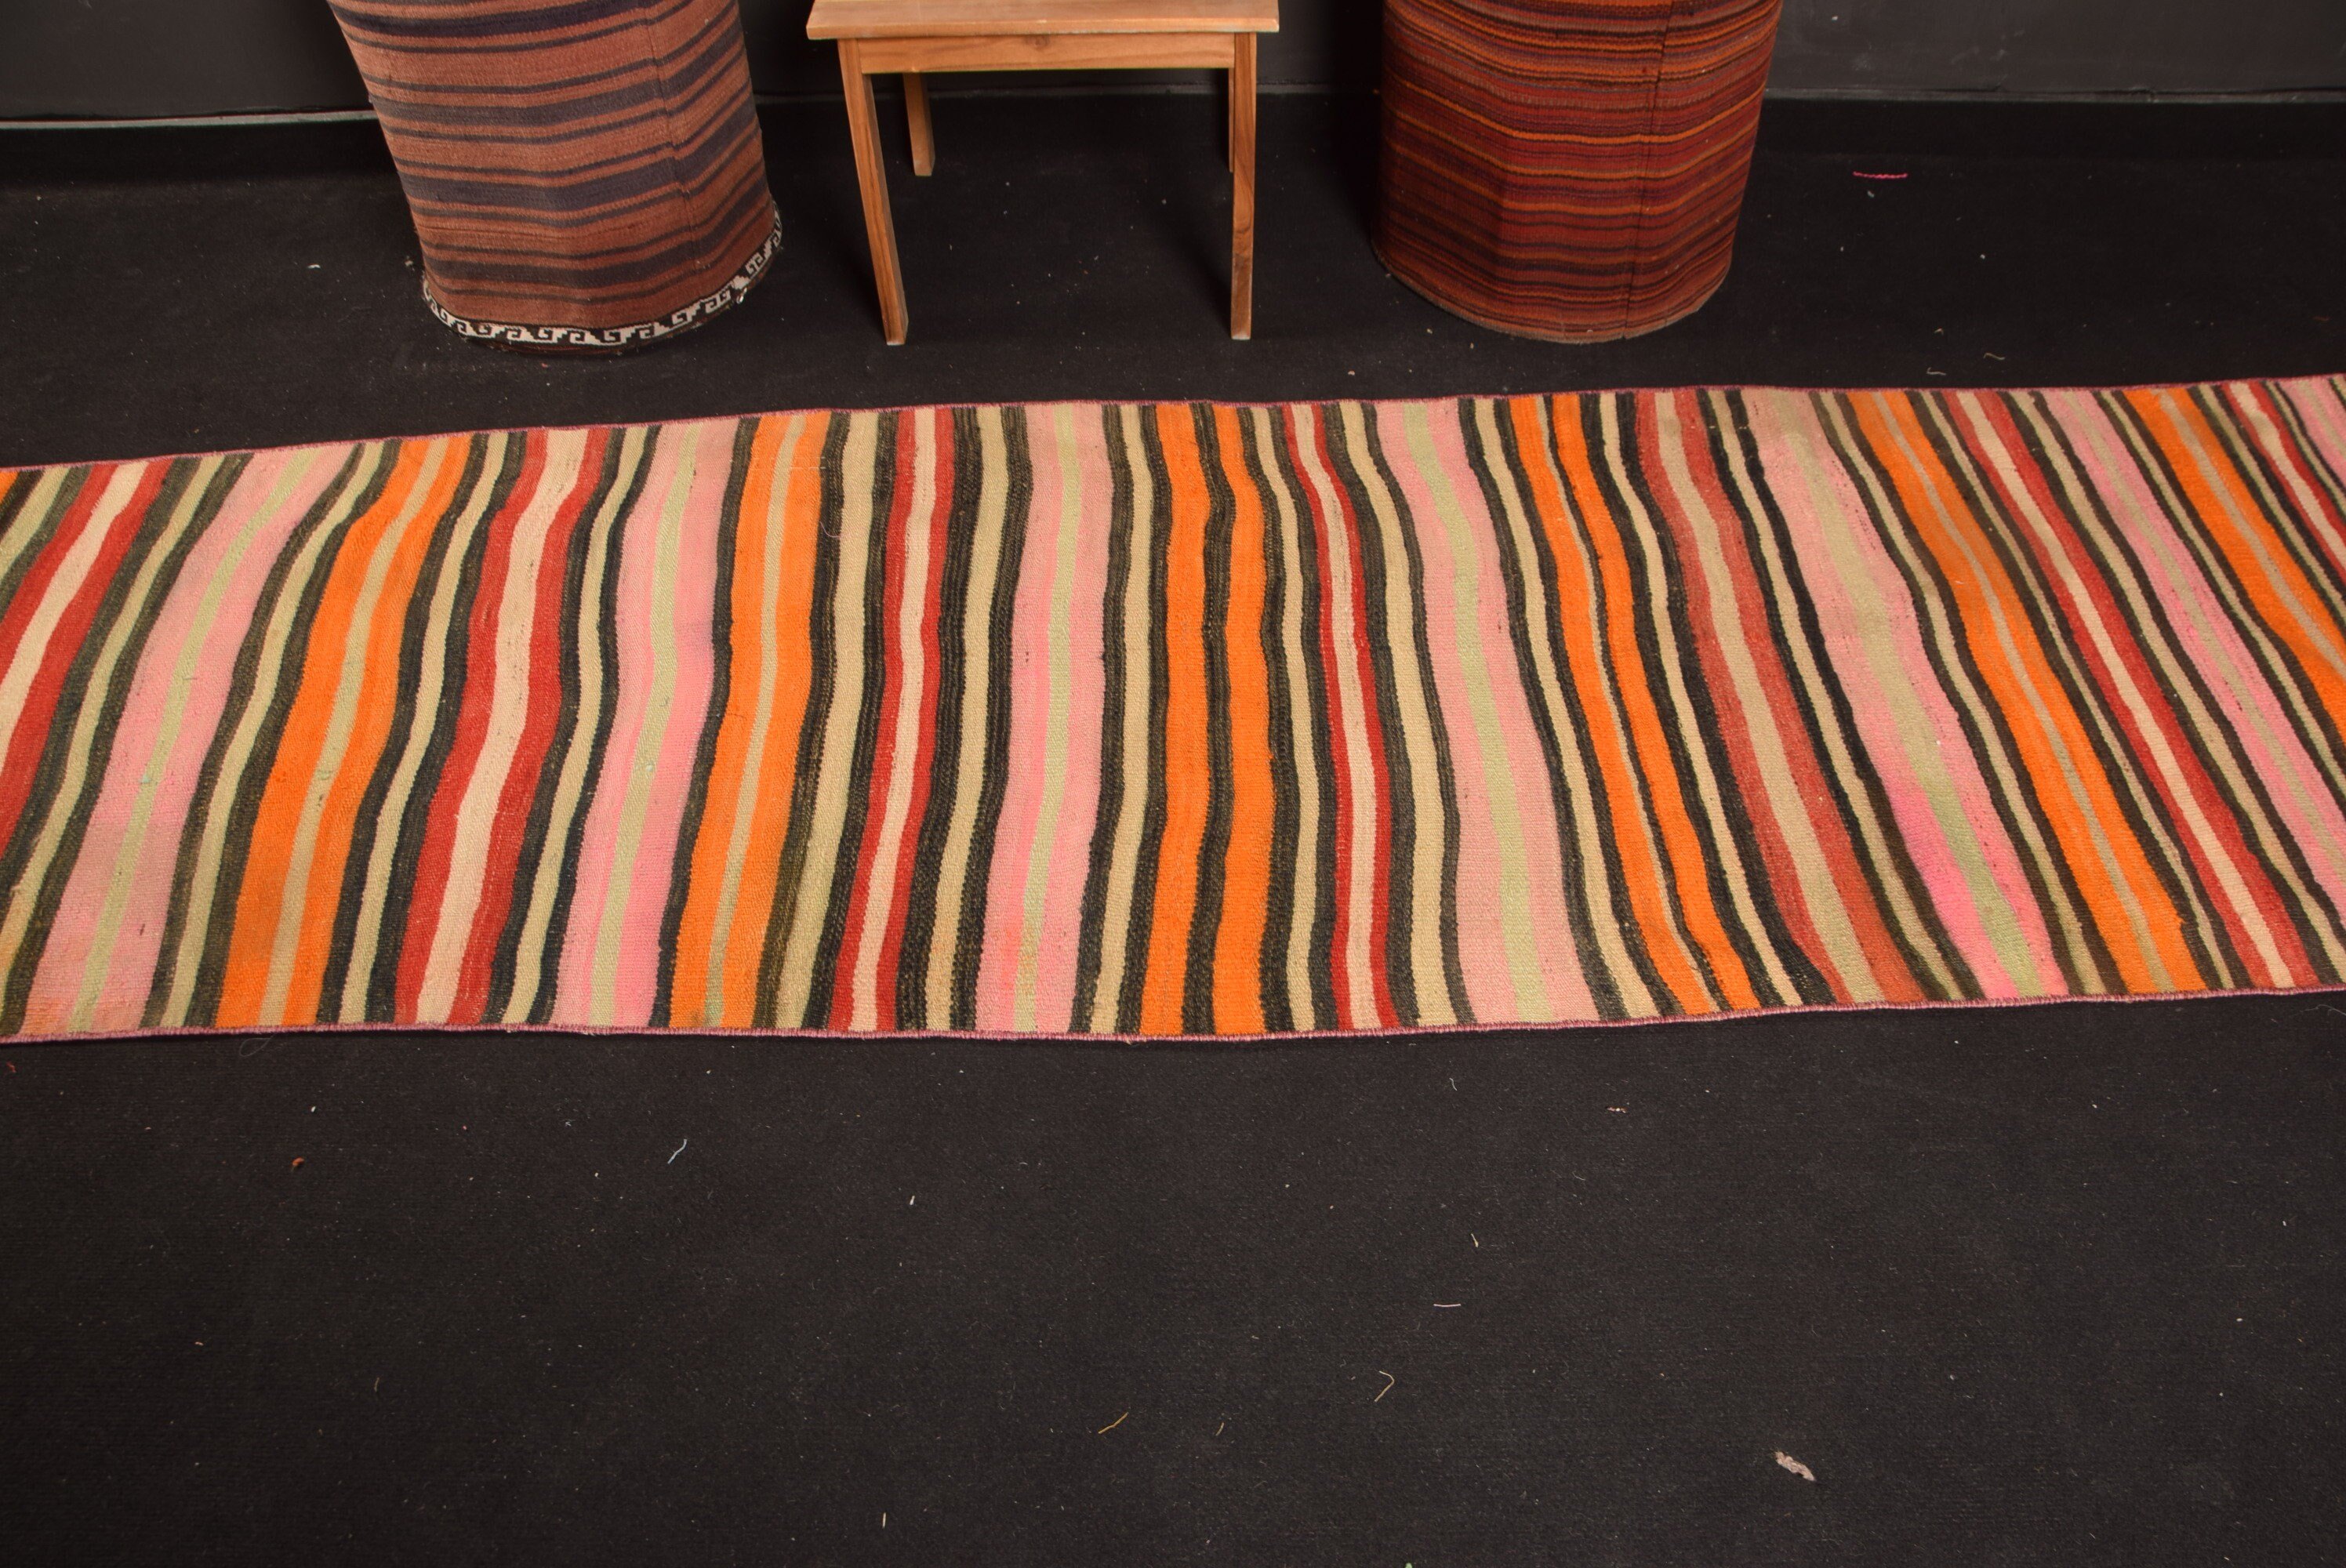 Orange Oriental Rugs, Turkish Rugs, Kitchen Rugs, Kilim, 2.6x9.3 ft Runner Rugs, Floor Rug, Hallway Rugs, Vintage Rug